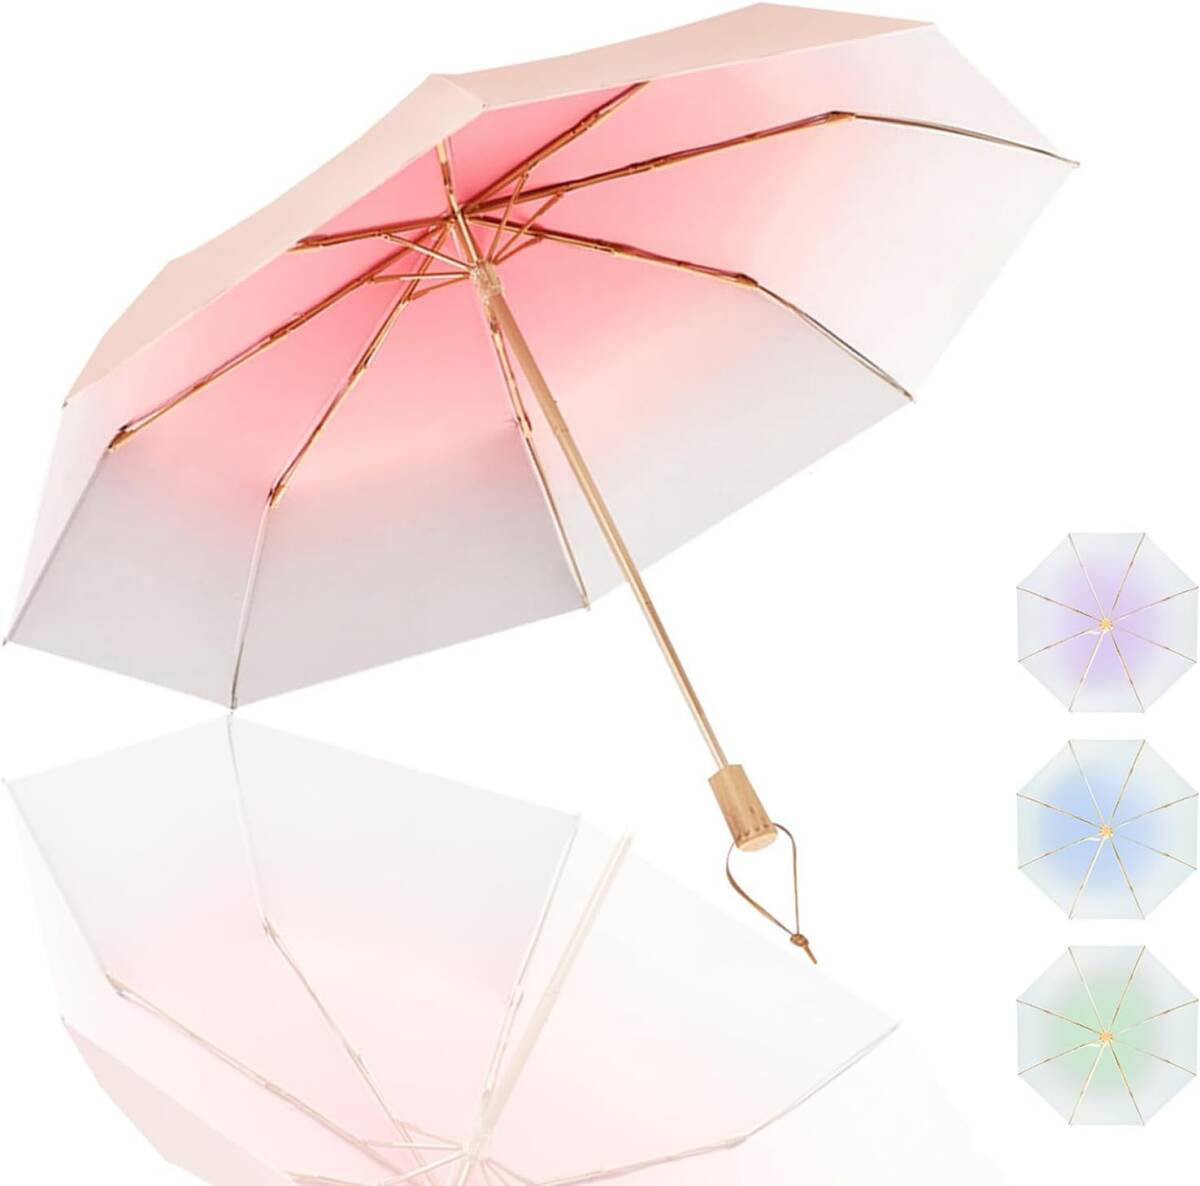 日傘 折りたたみ傘 ピンク 和風 折り畳み 頑丈 8本骨 二枚生地 uvカット遮光 UPF50+ 紫外線対策 遮熱 軽量 耐風 日傘兼用雨傘_画像7